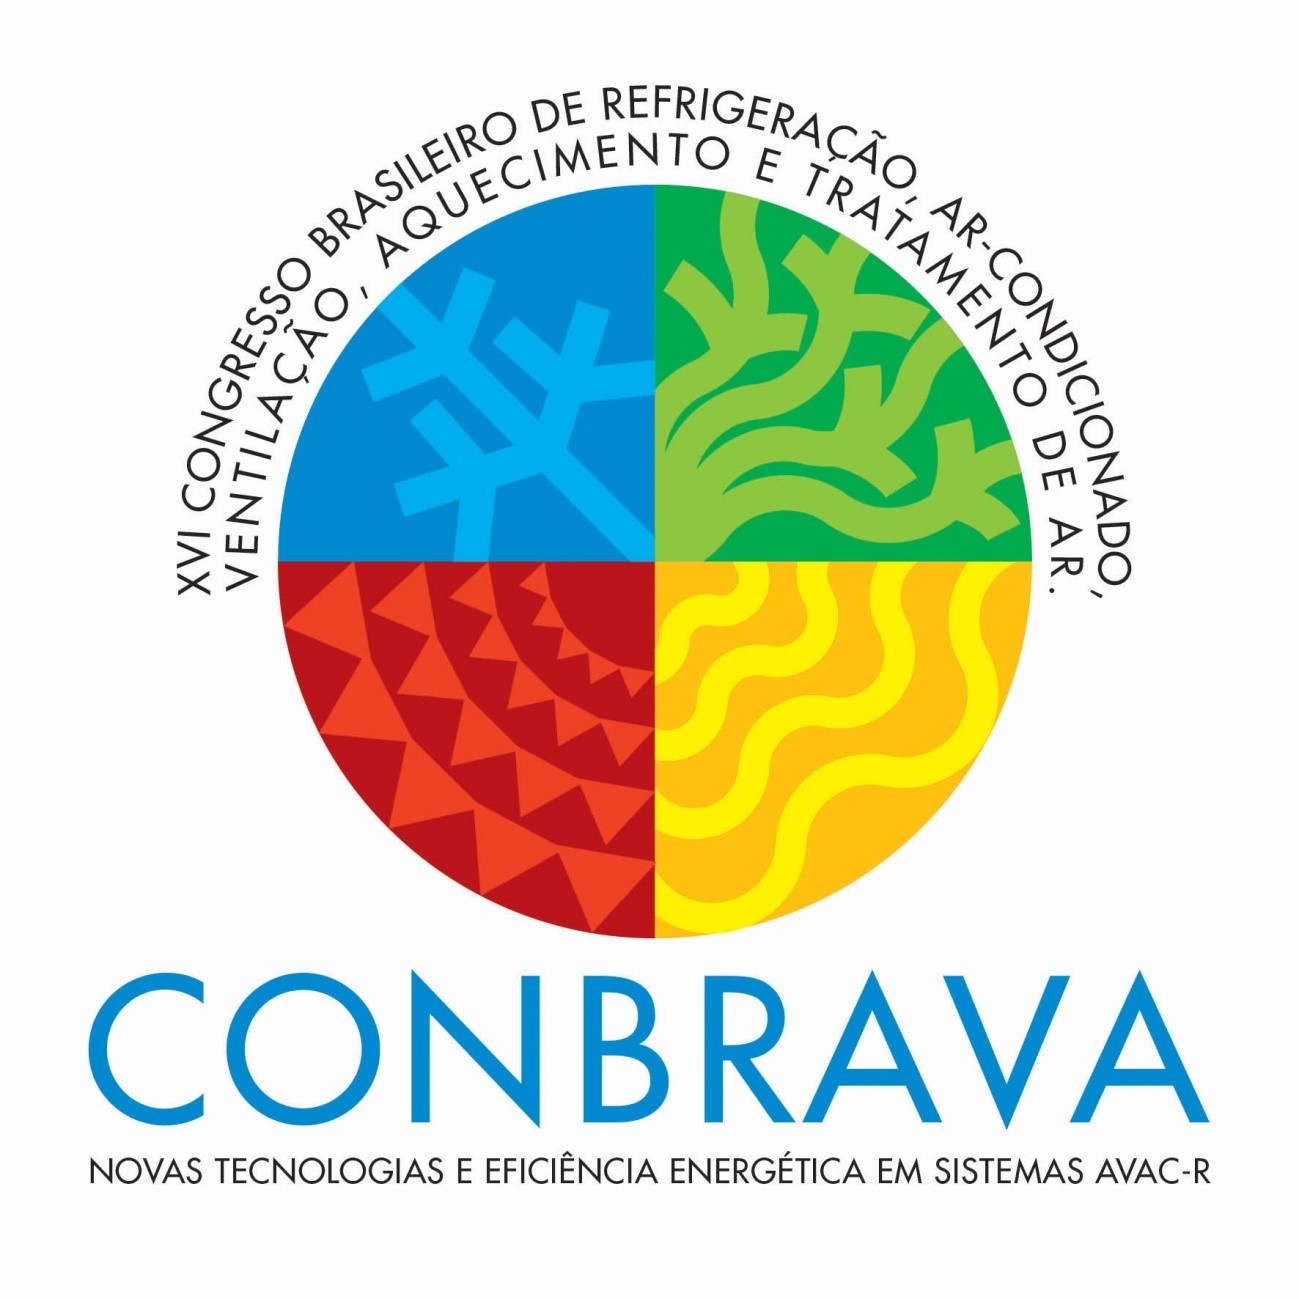 Conclusões das mesas-redondas do CONBRAVA 2019 apontam caminhos para os temas de QAI, Fluido Refrigerante e Eficiência Energética